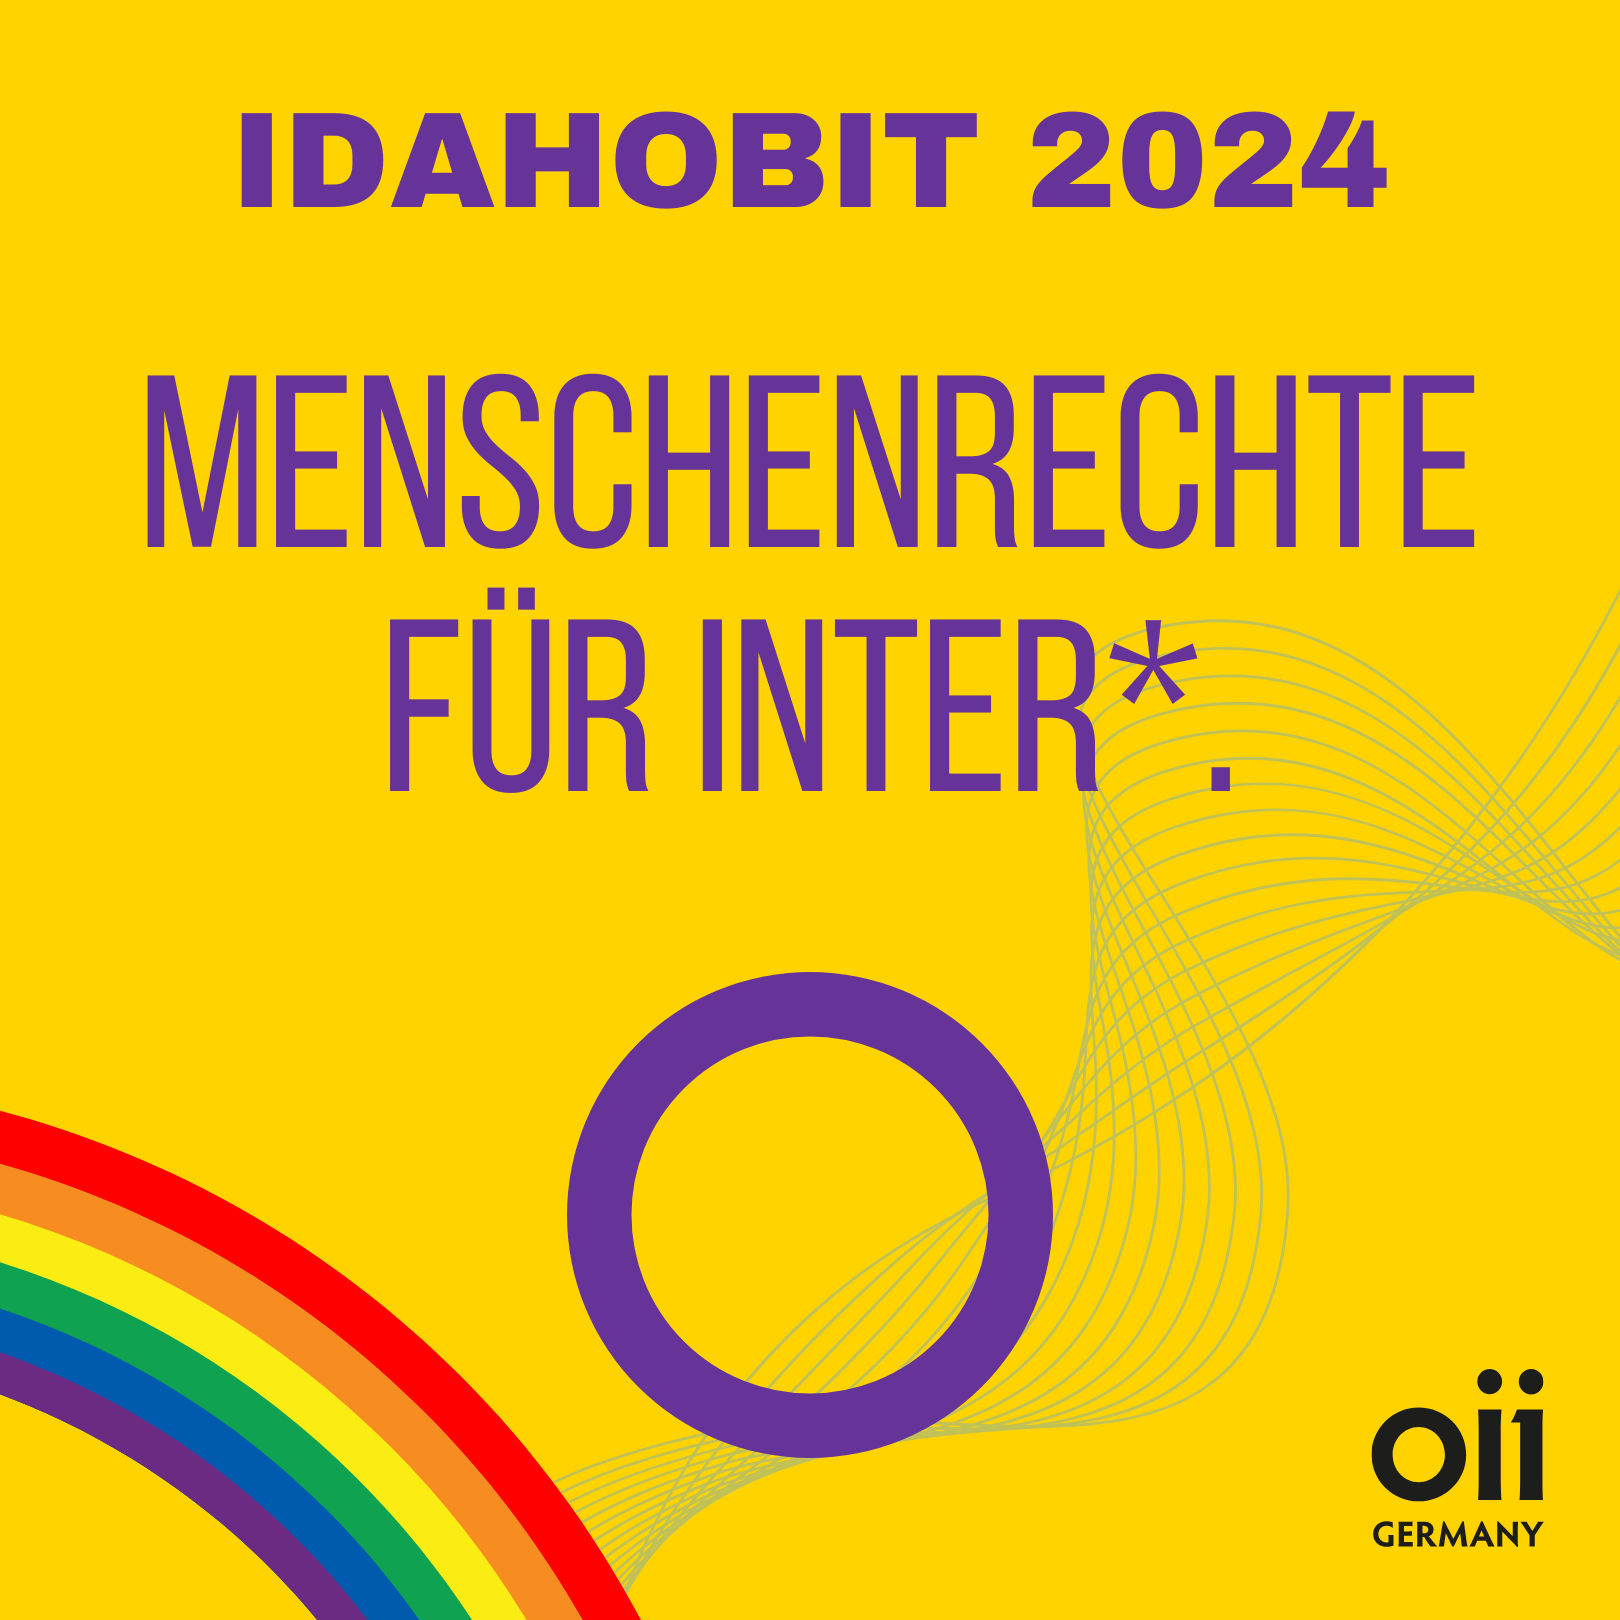 IDAHOBIT 2024: Fortschritte und Rückschritte für Inter* in Deutschland und Europa